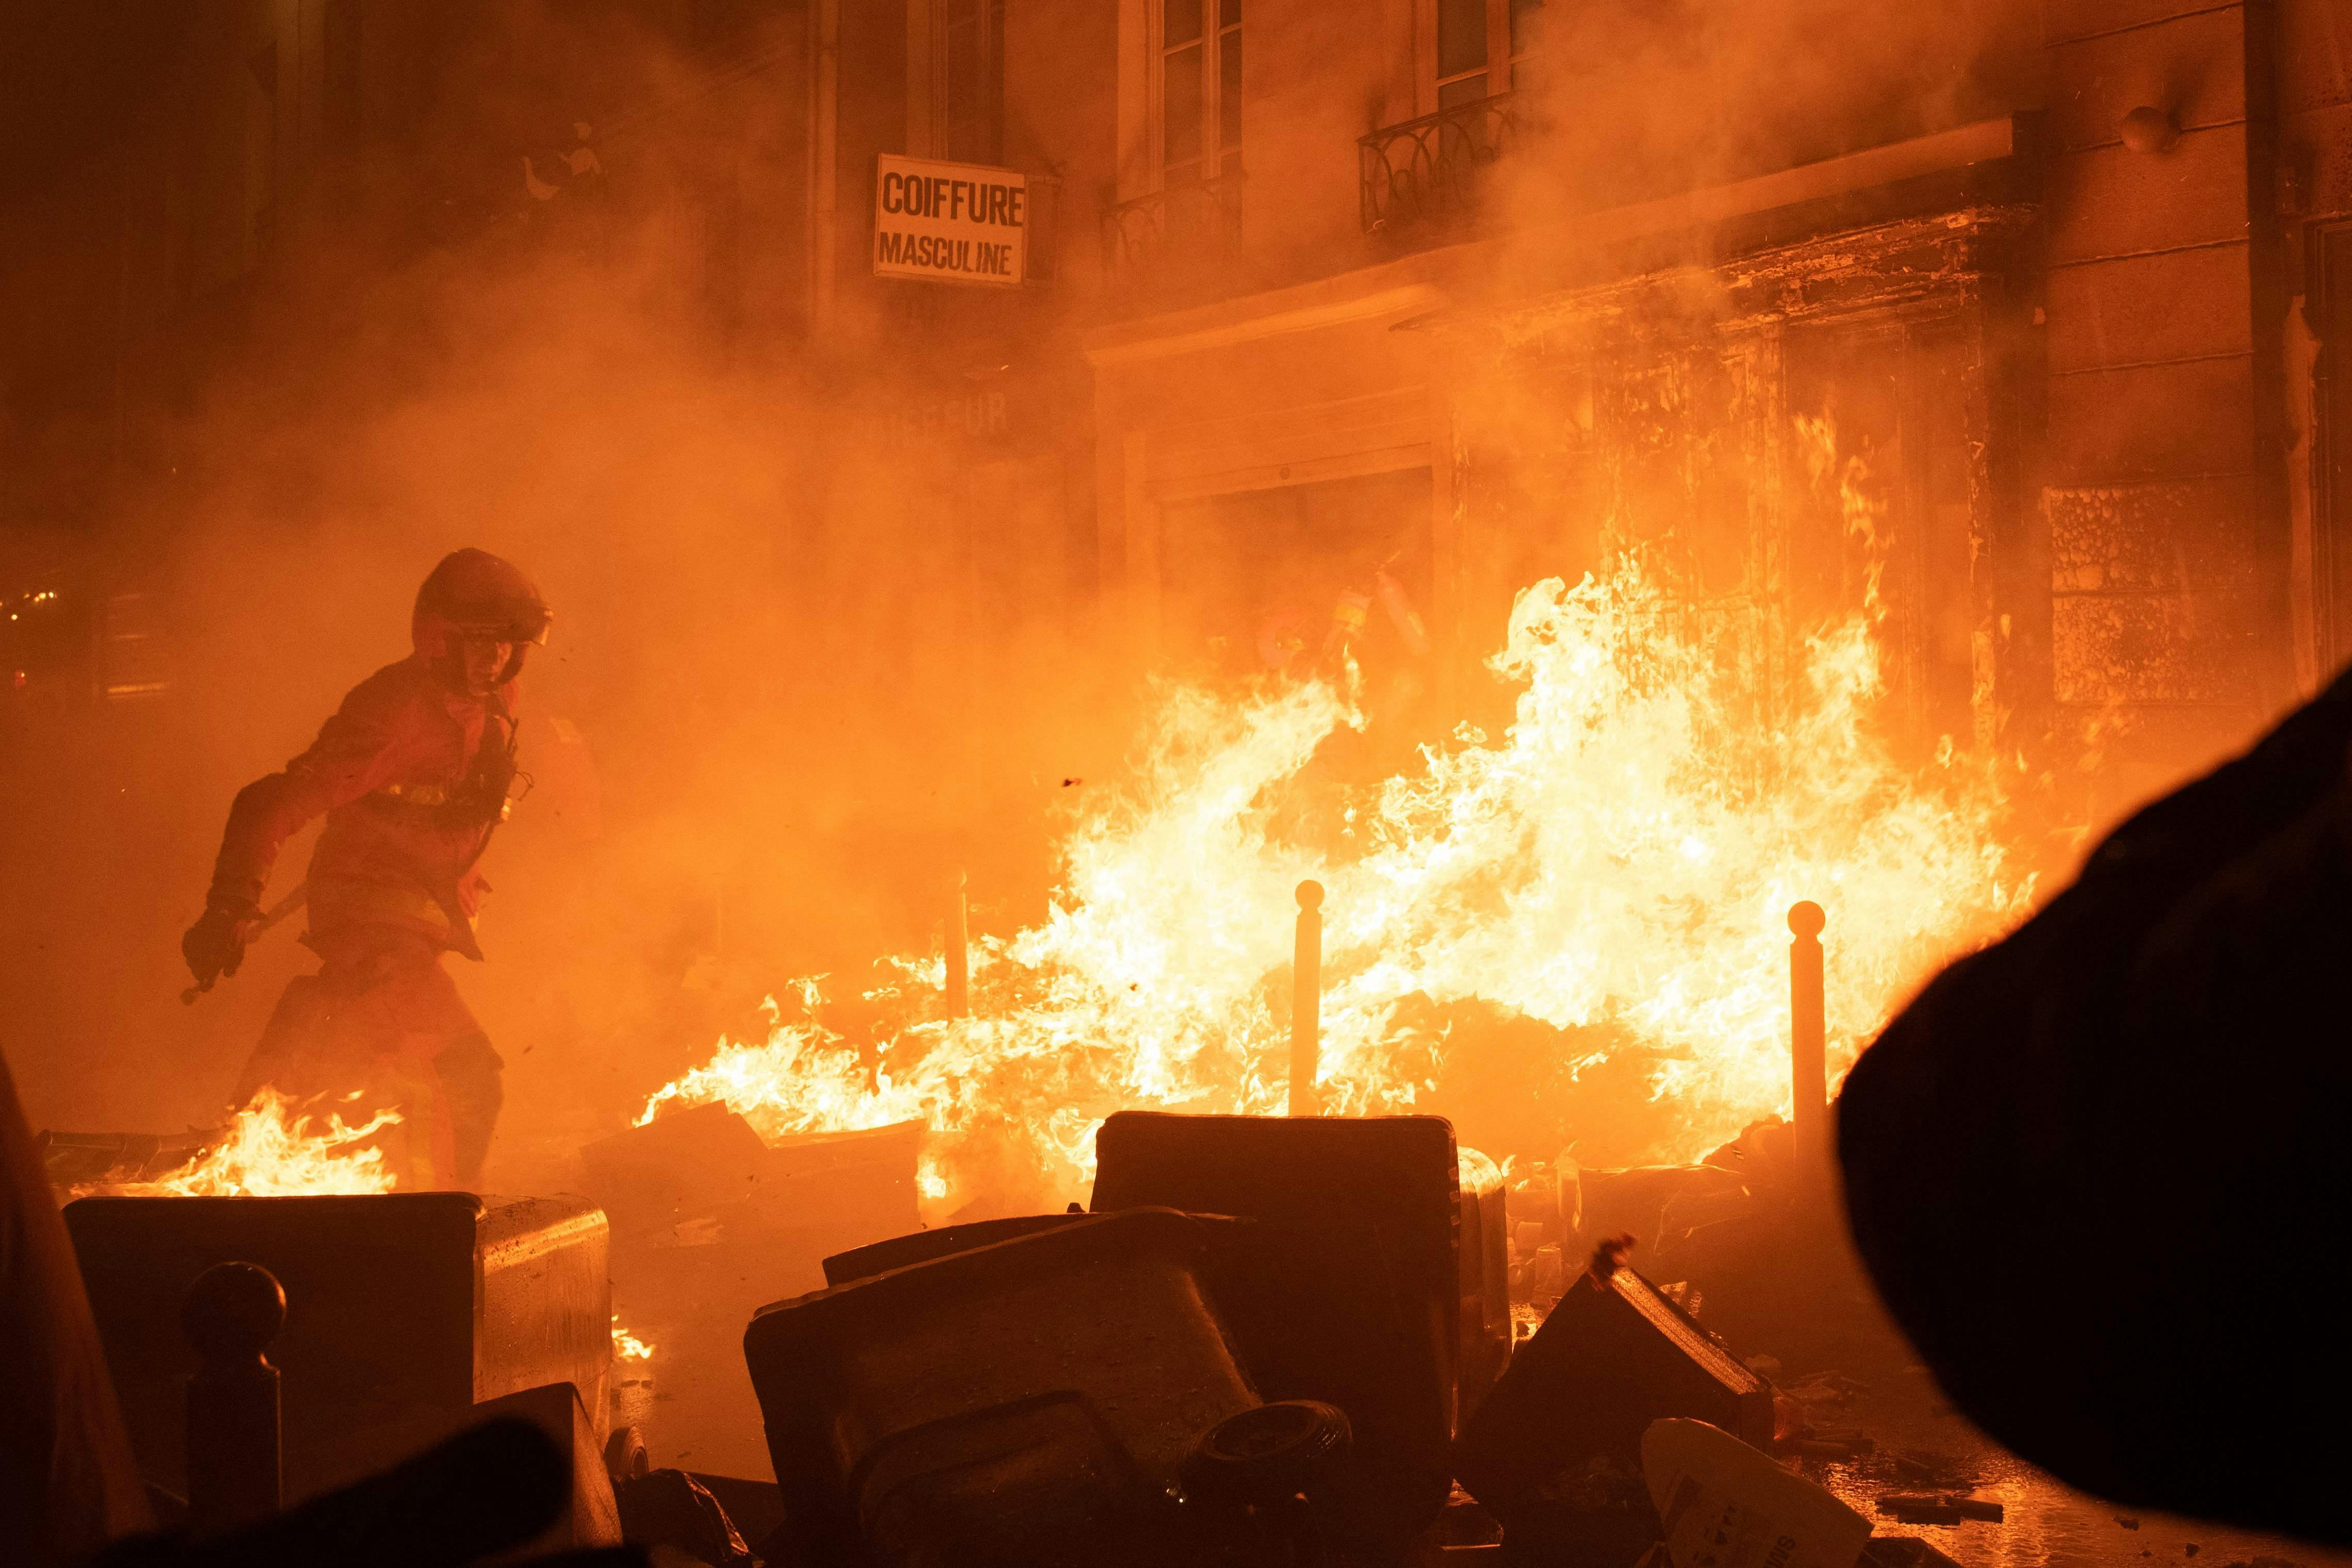 En uge efter beslutningen om en ny pensionsreform - gennemført uden et valg -&nbsp; tager urolighederne og demonstrationerne til i den franske hovedstad.
